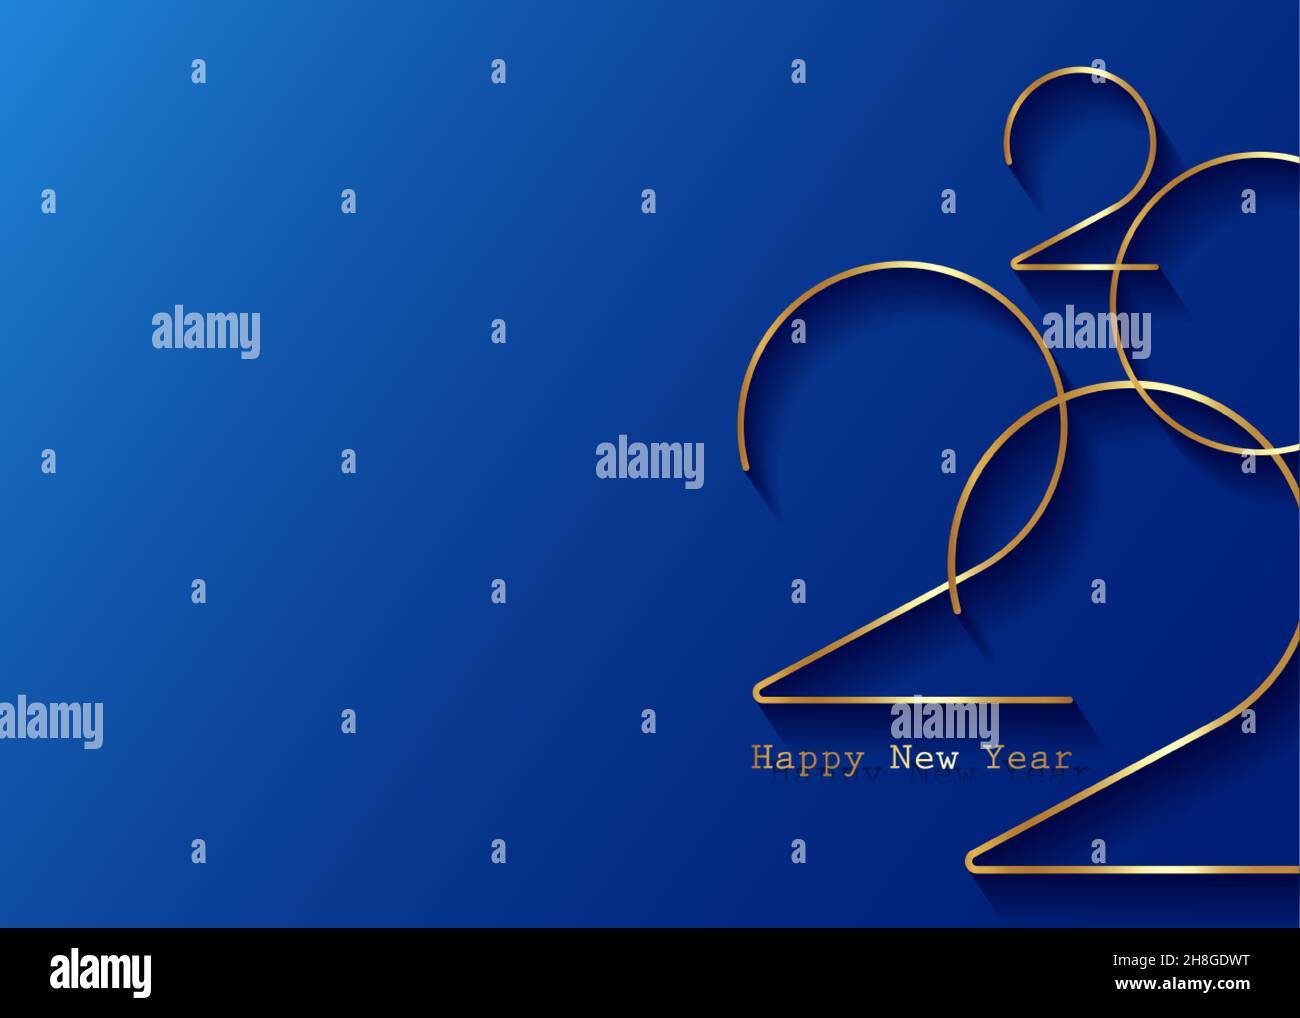 Goldenes Neujahrslogo 2022. Weihnachtskarte. Vektorgrafik. Urlaubsgestaltung für Grußkarte, Einladung, Kalender, Party, Gold Luxus vip, Stock Vektor